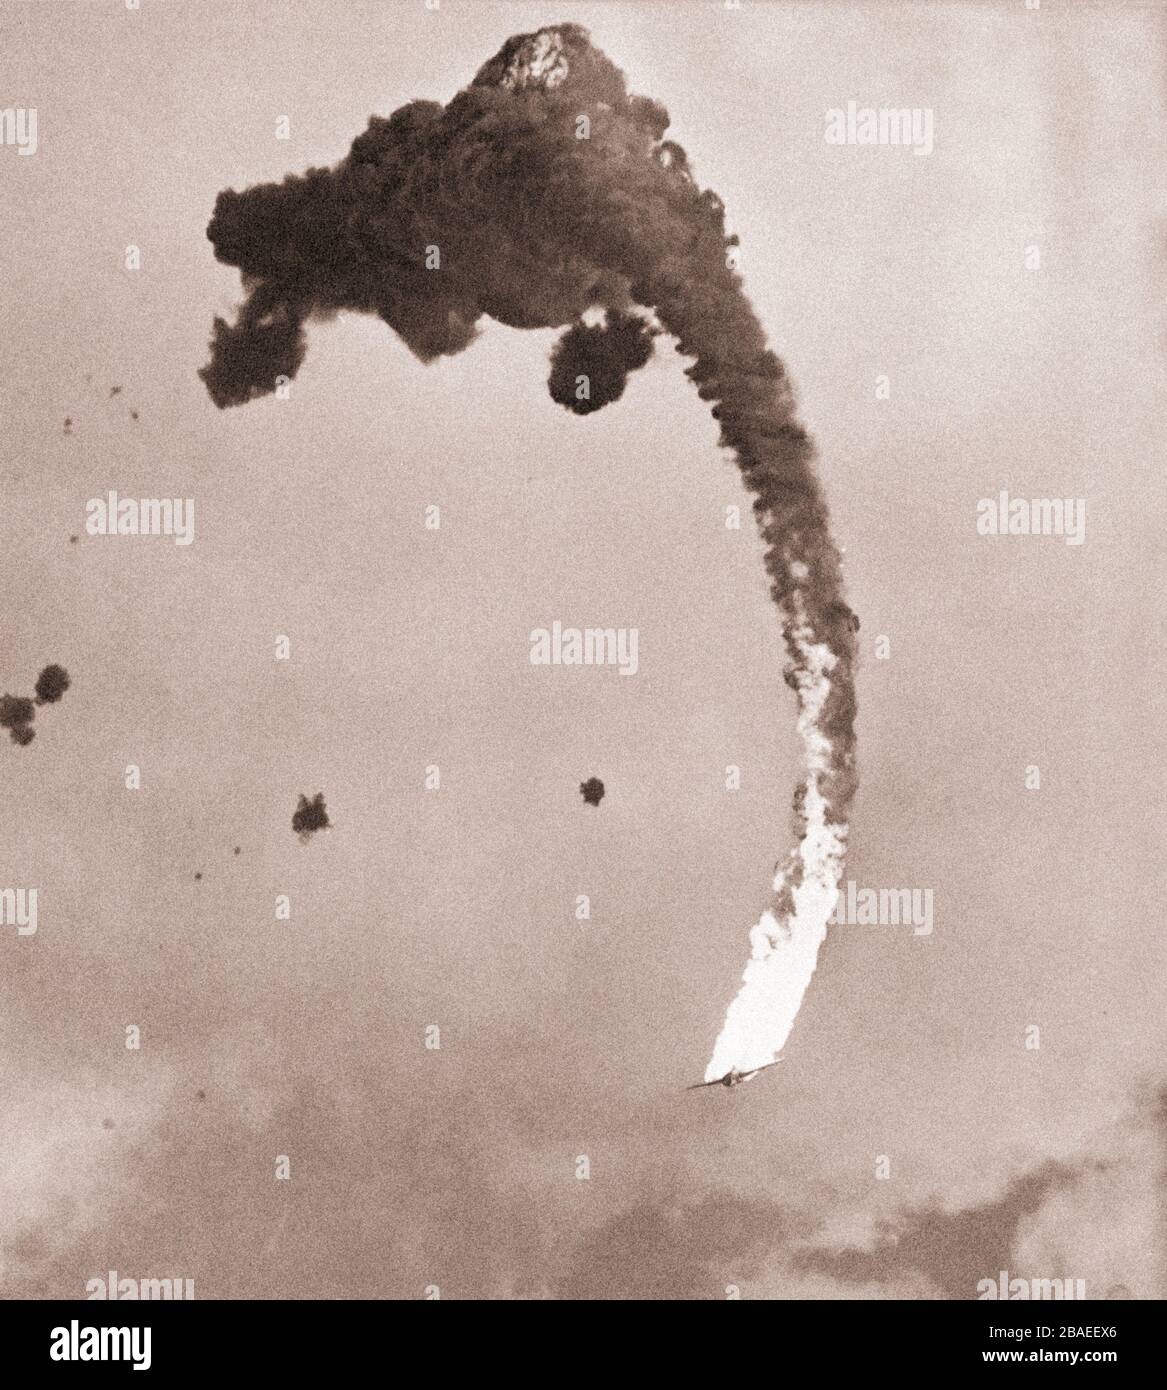 Un avion Kawanishi N1K-J Shiden est en feu, frappé par un incendie anti-avion de l'USS Hornet. Okinawa, Japon. 18 mars 1945. Banque D'Images